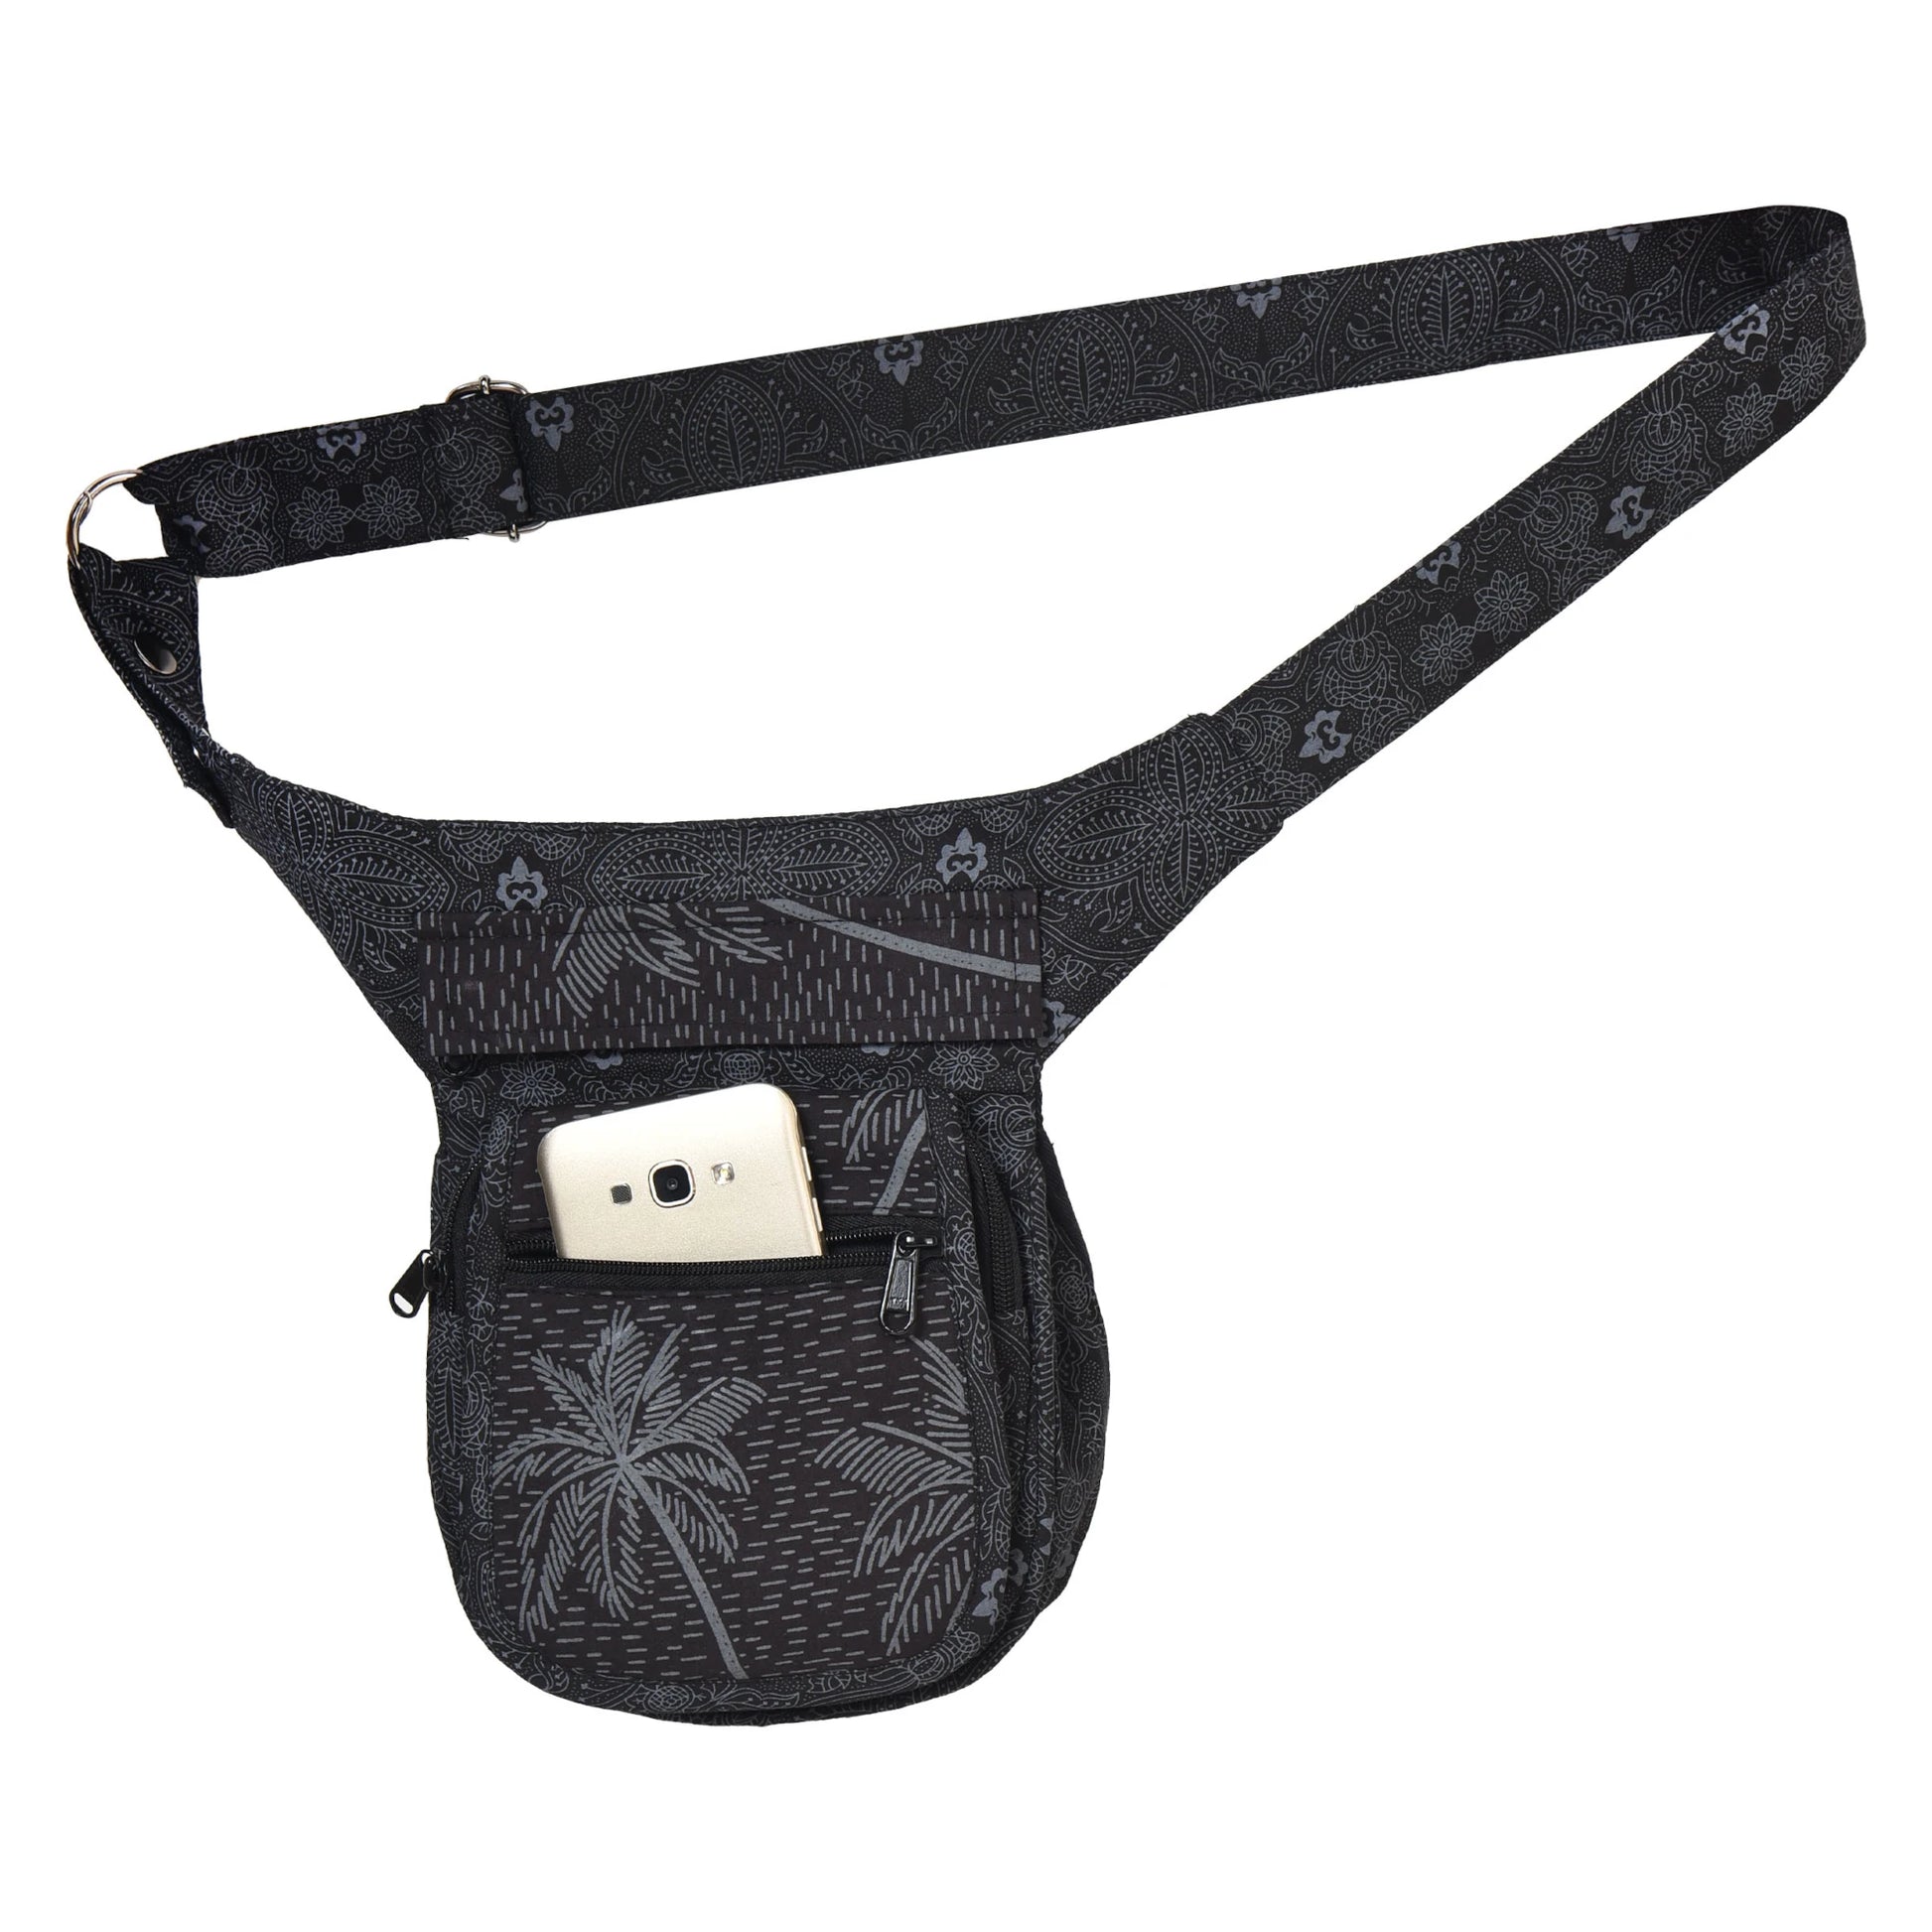 Gürteltasche Schwarz mit Palmen Motiv. Der Gürtel ist größenverstellbar dadurch ist diese Tasche auch als Umhängetasche geeignet.